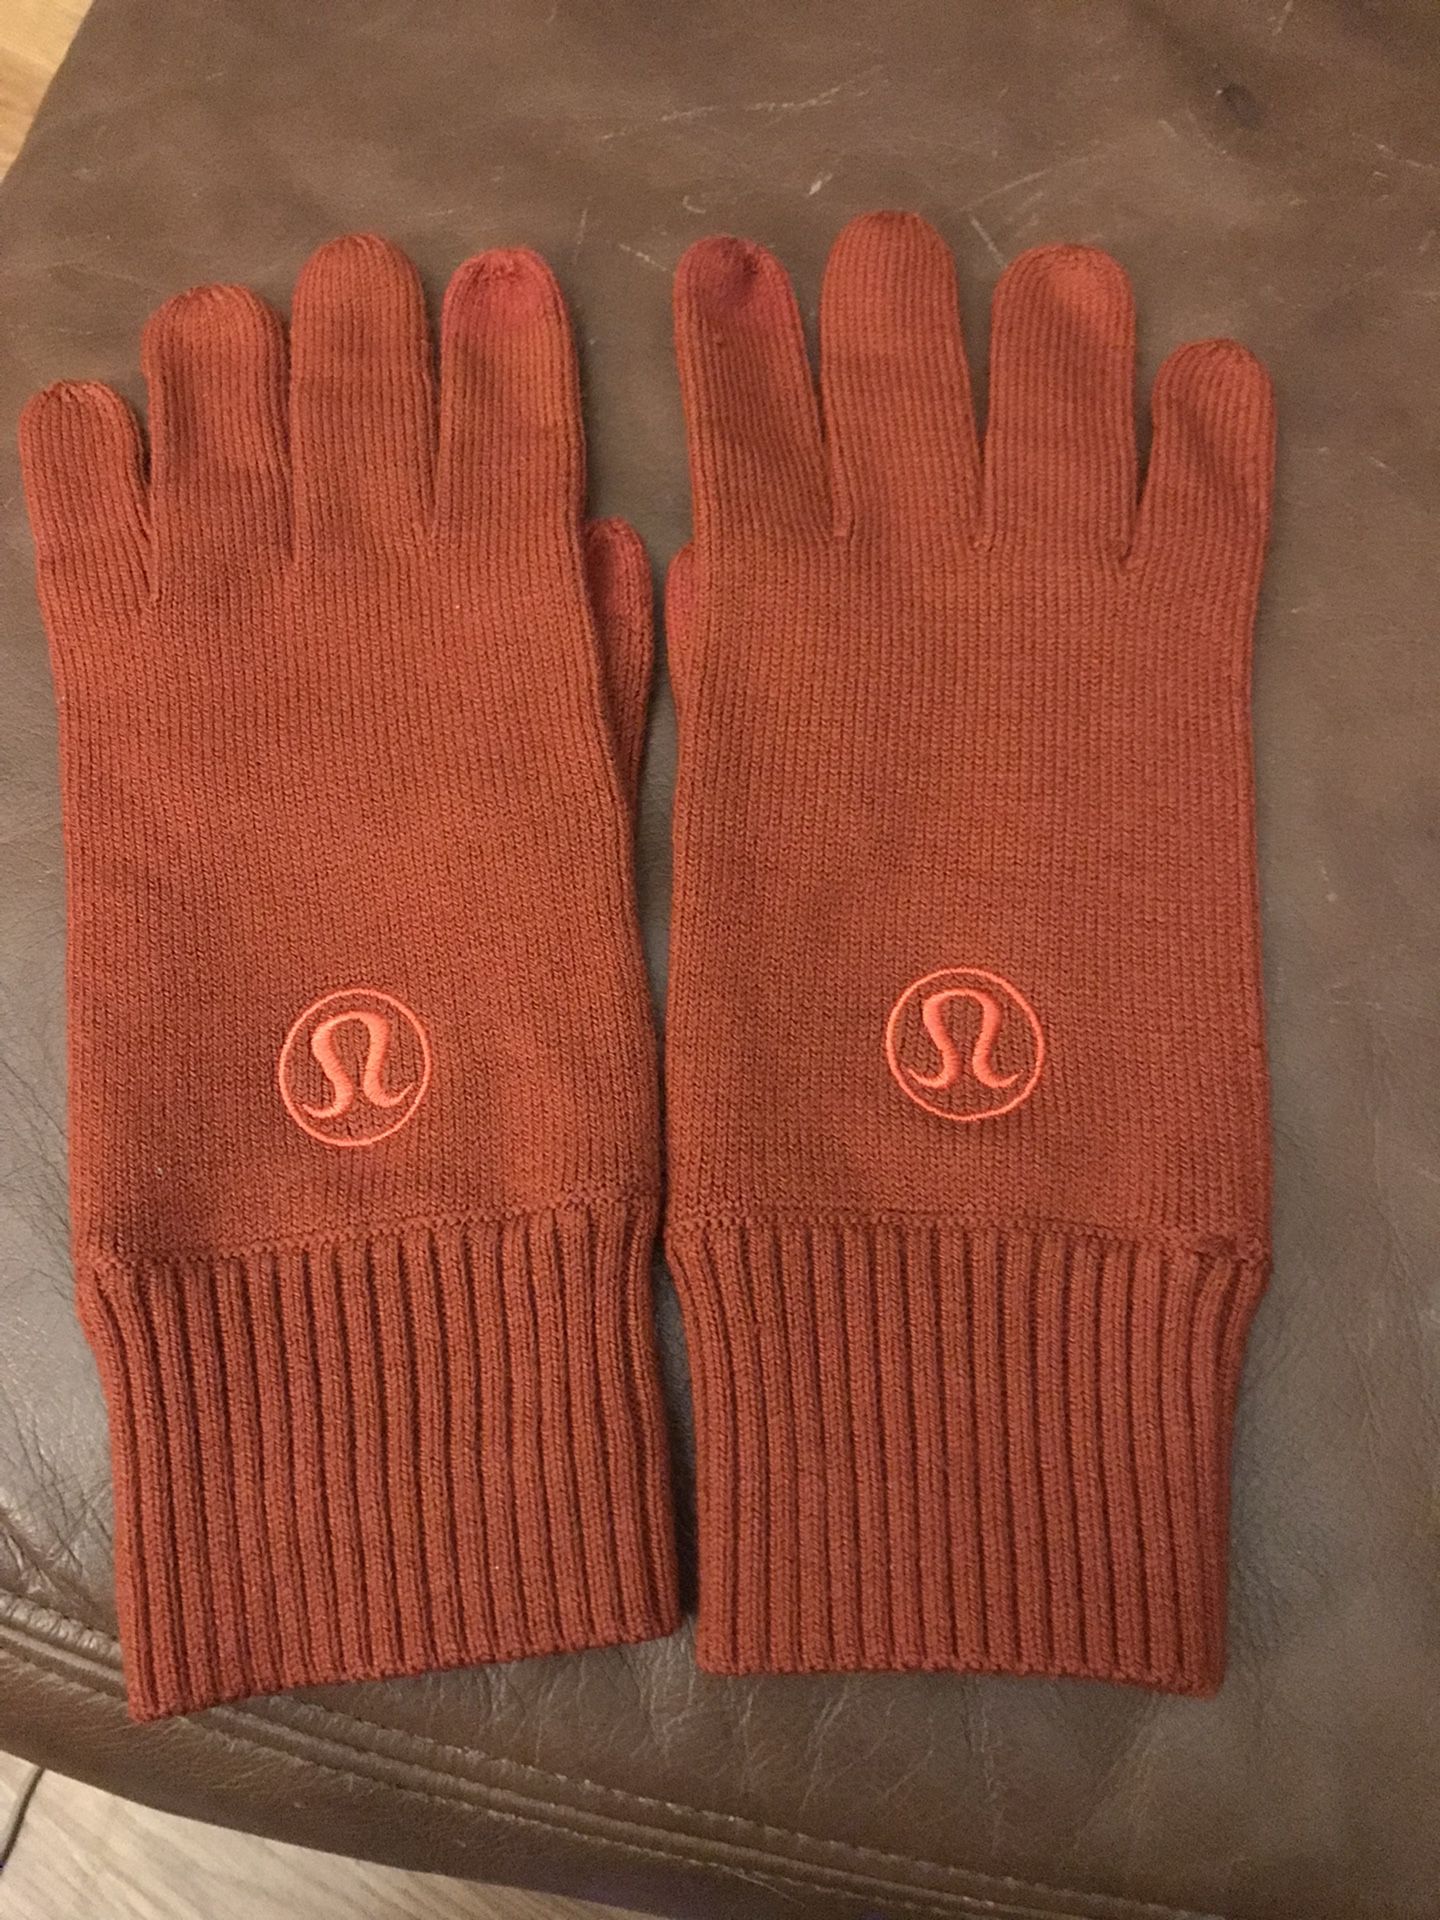 Lululemon Gloves